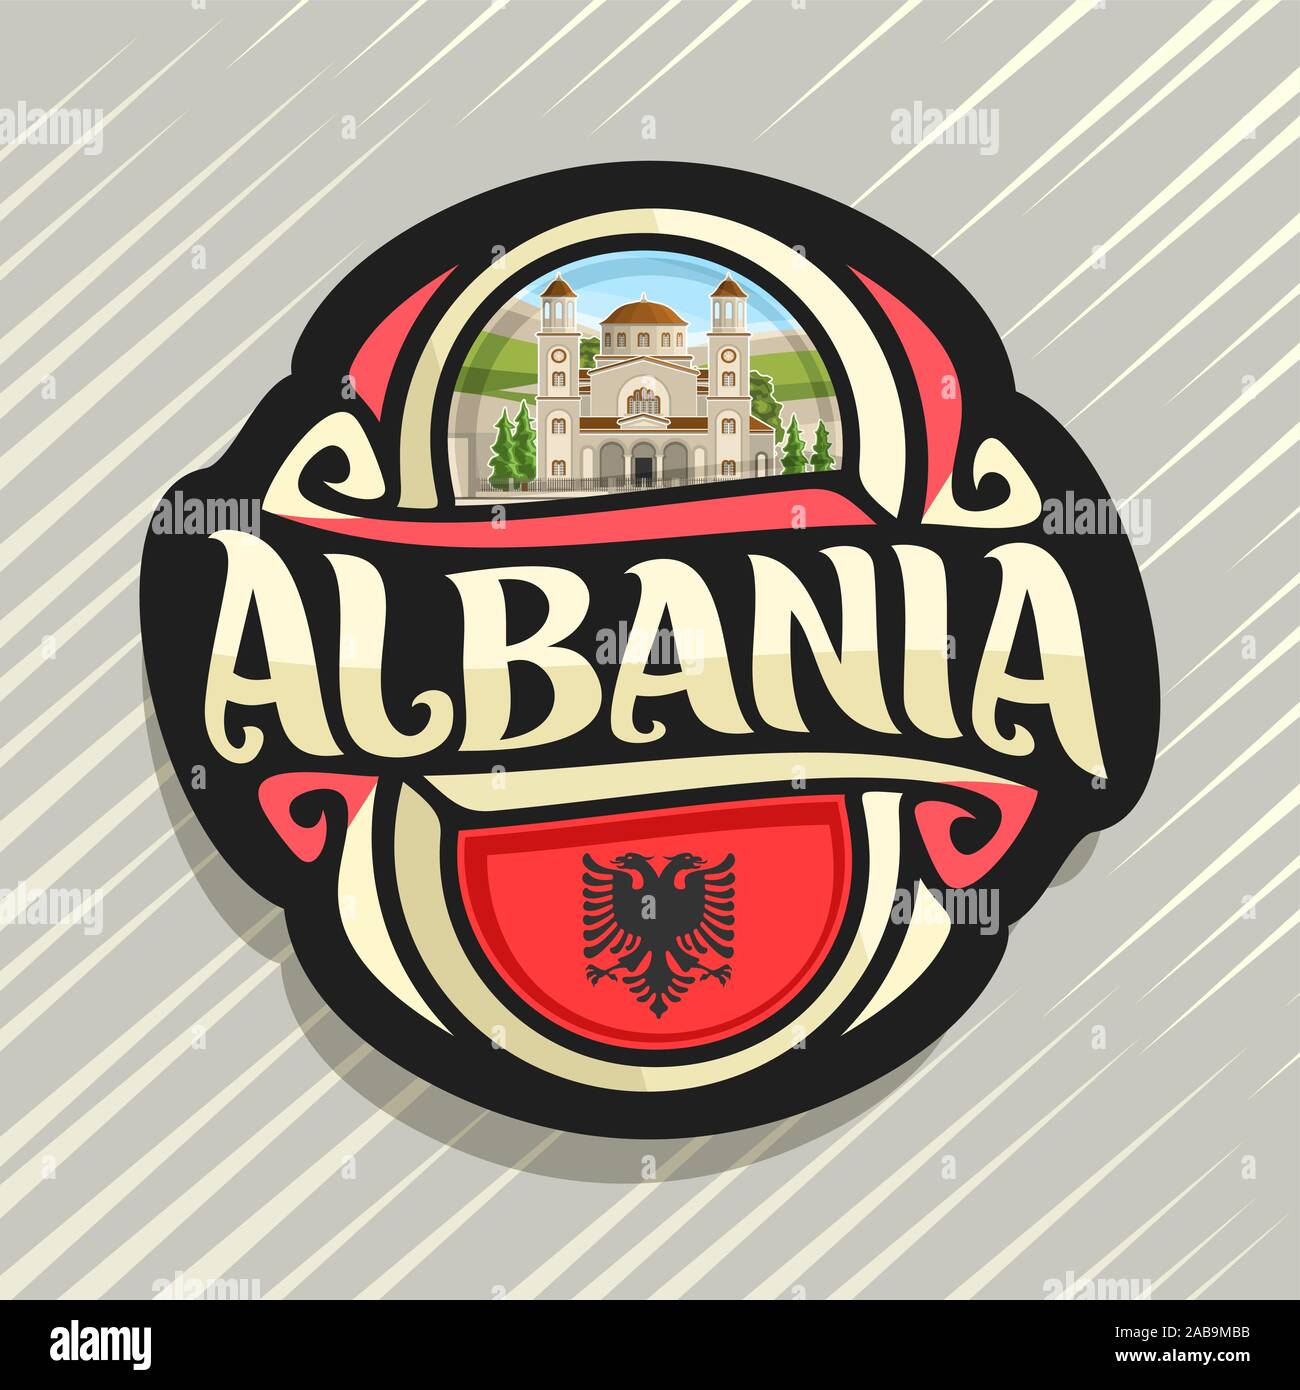 Vector logo para Albania, país, imán de nevera con la bandera del estado albanés, pincel original typeface para word albania y símbolo nacional albanesa - Saint Ilustración del Vector